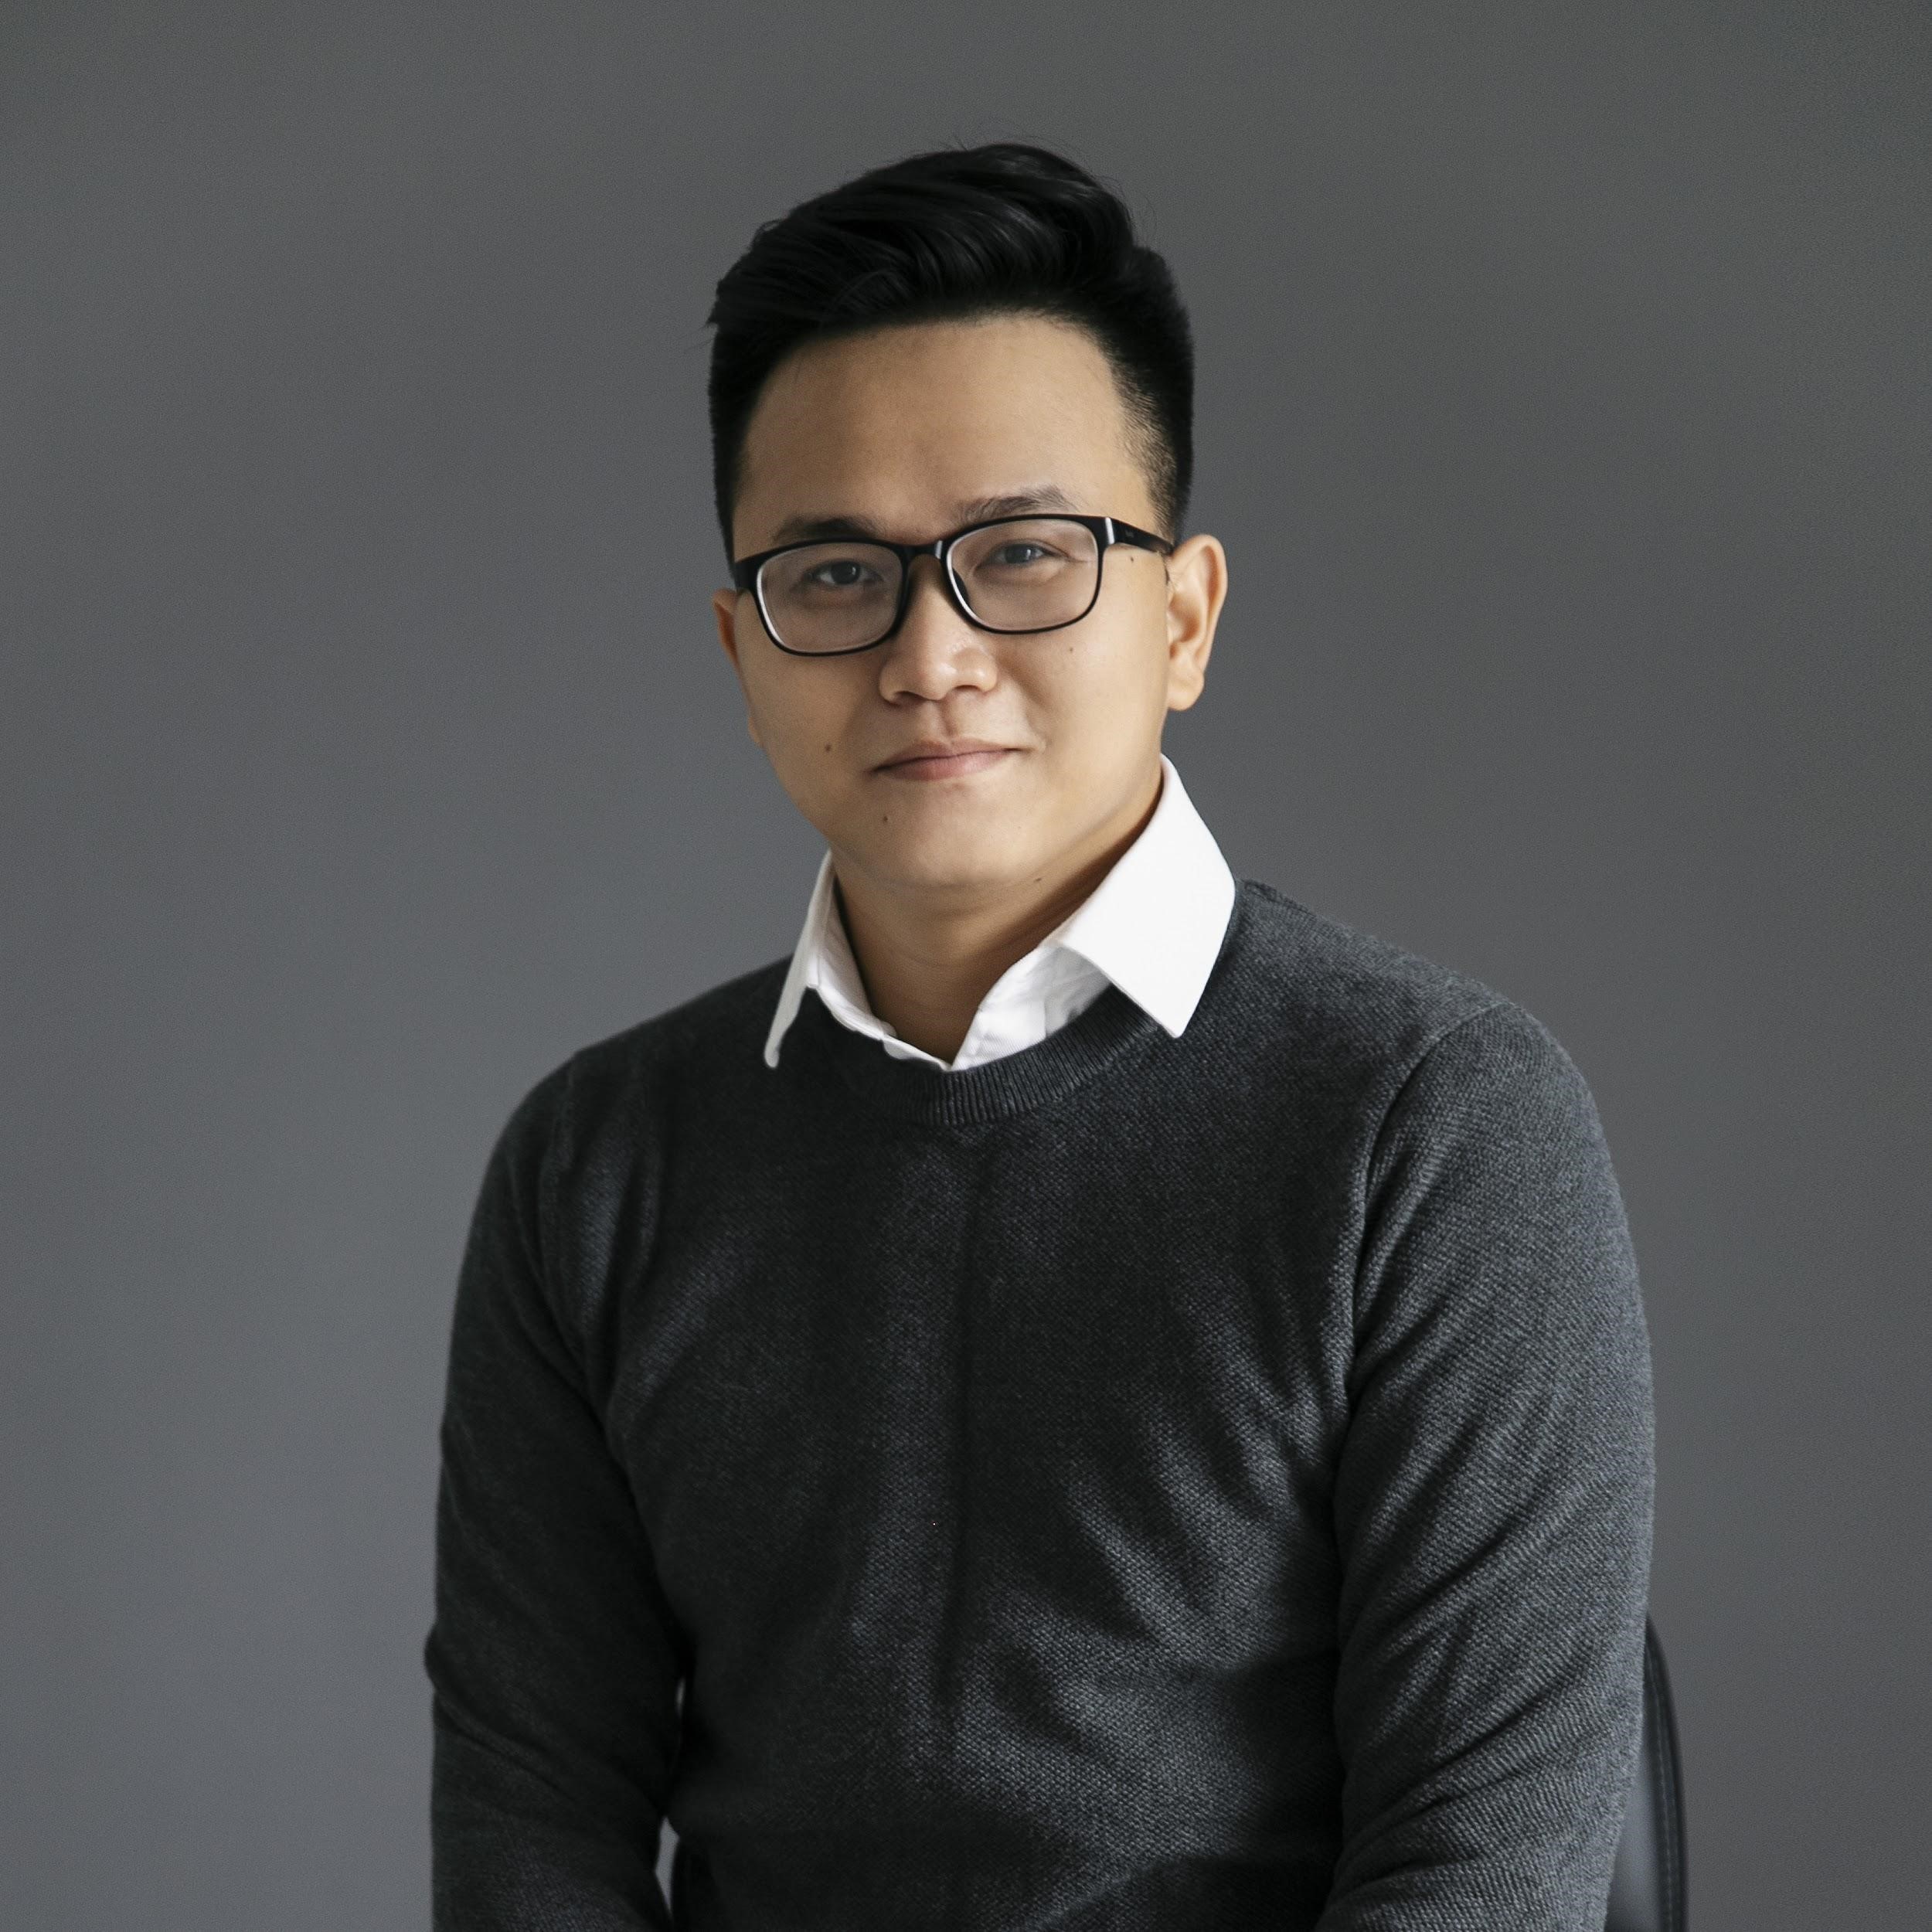 CEO Nhân Nguyễn: Bỏ việc nghìn đô để khởi nghiệp với đam mê nến thơm